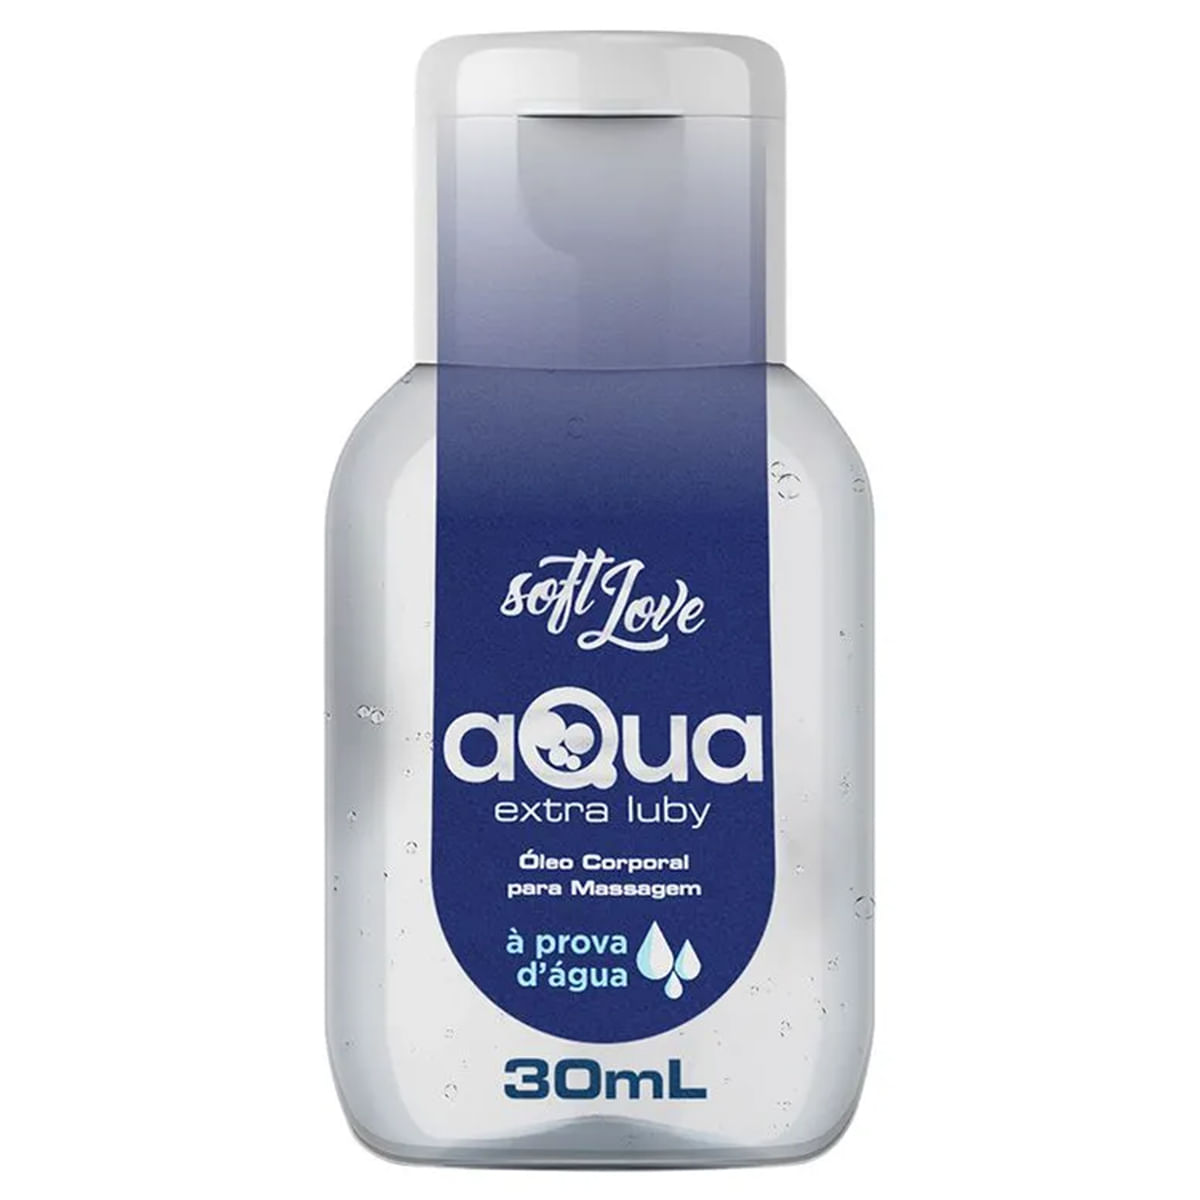 Aqua Extra Luby Óleo Corporal para Massagem 30ml Soft Love